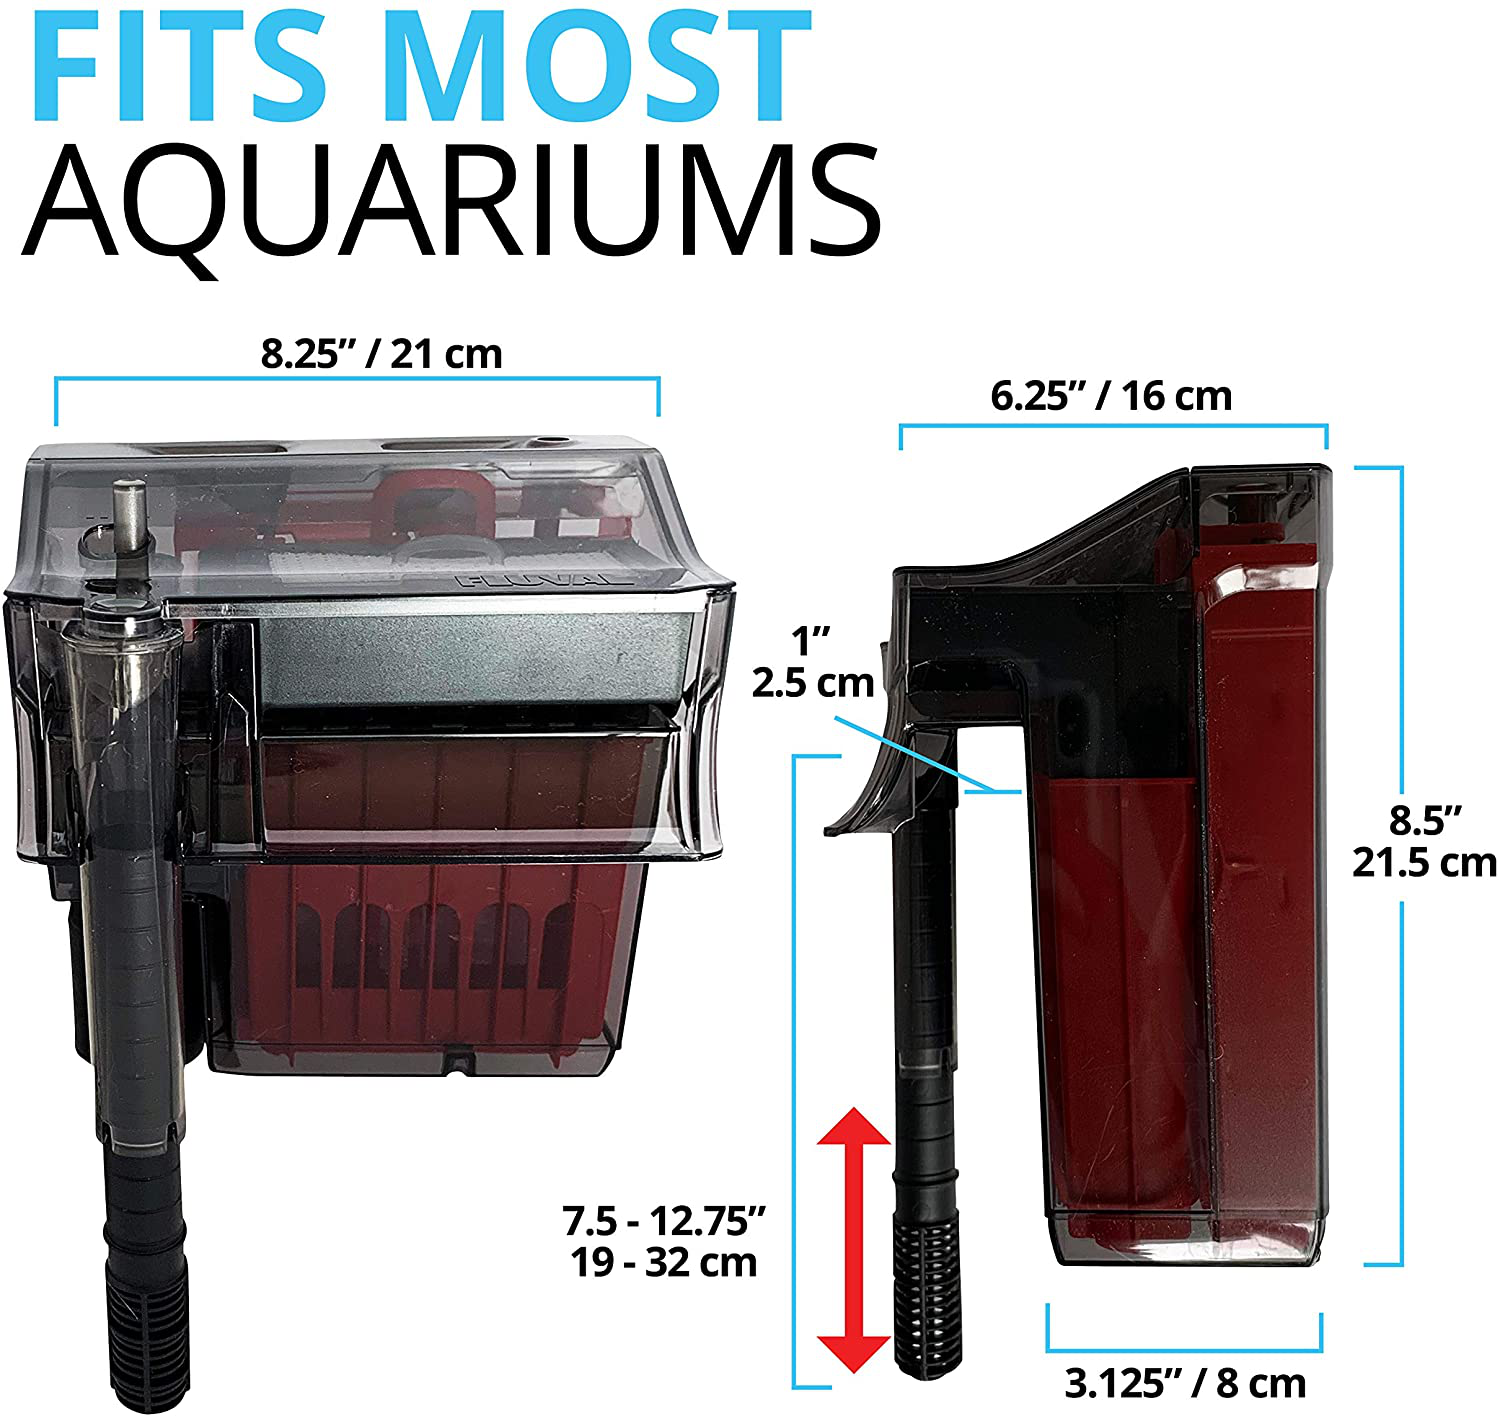 Fluval C Series Power Filter, Clip-On Aquarium Filter Animals & Pet Supplies > Pet Supplies > Fish Supplies > Aquarium Filters Fluval   